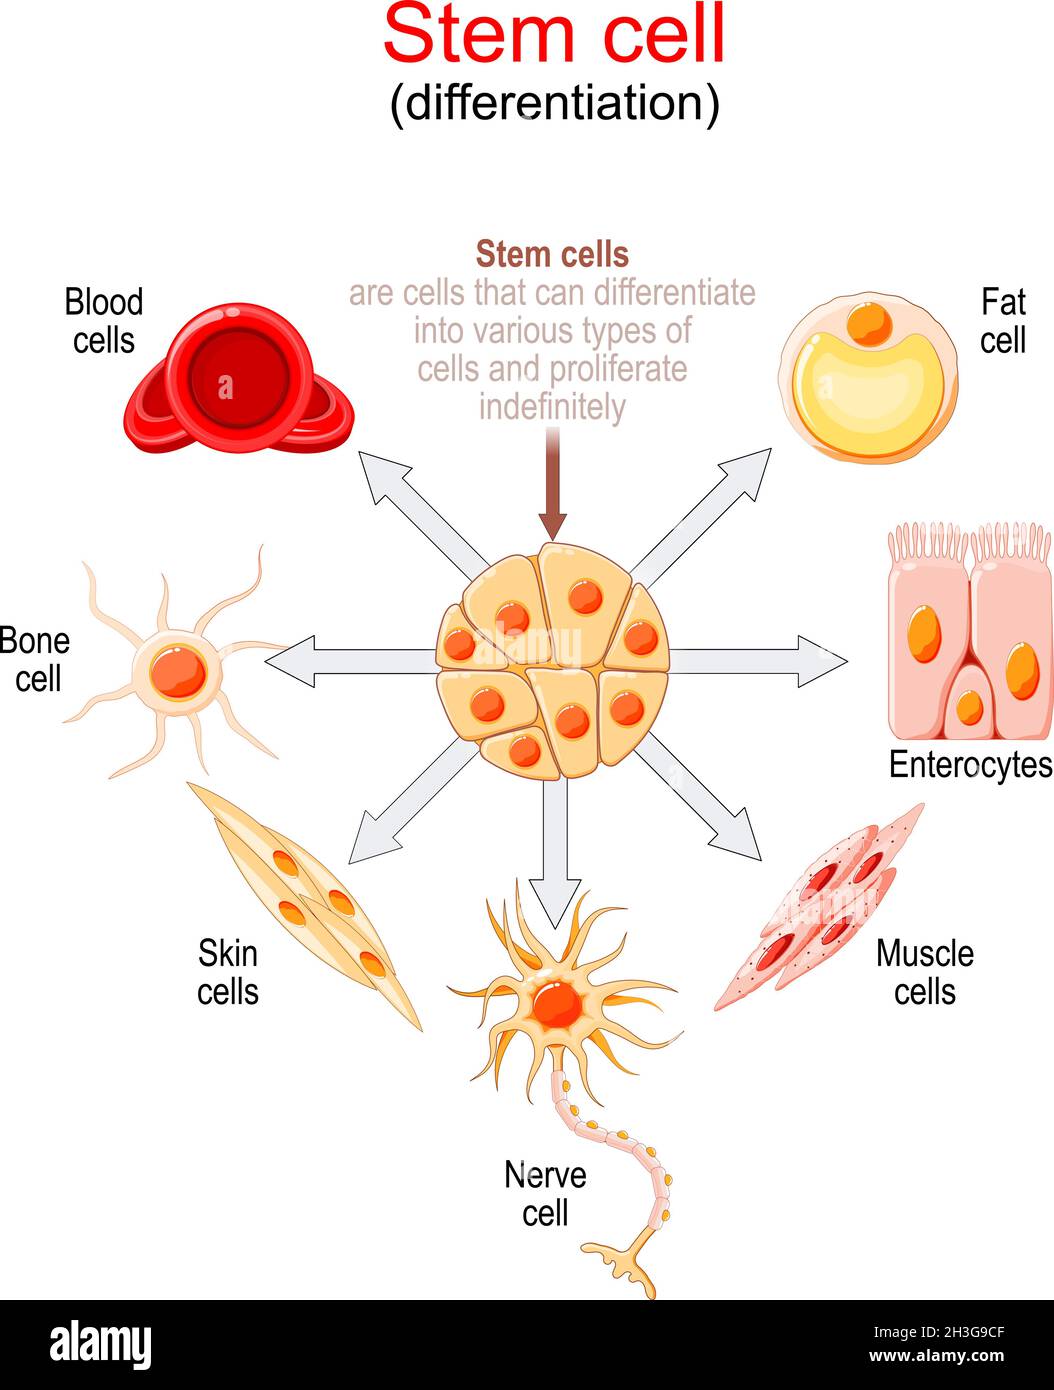 Stammzelldifferenzierung. Stammzellen sind Zellen, die sich in verschiedene Zelltypen differenzieren und unbegrenzt vermehren können. Stock Vektor